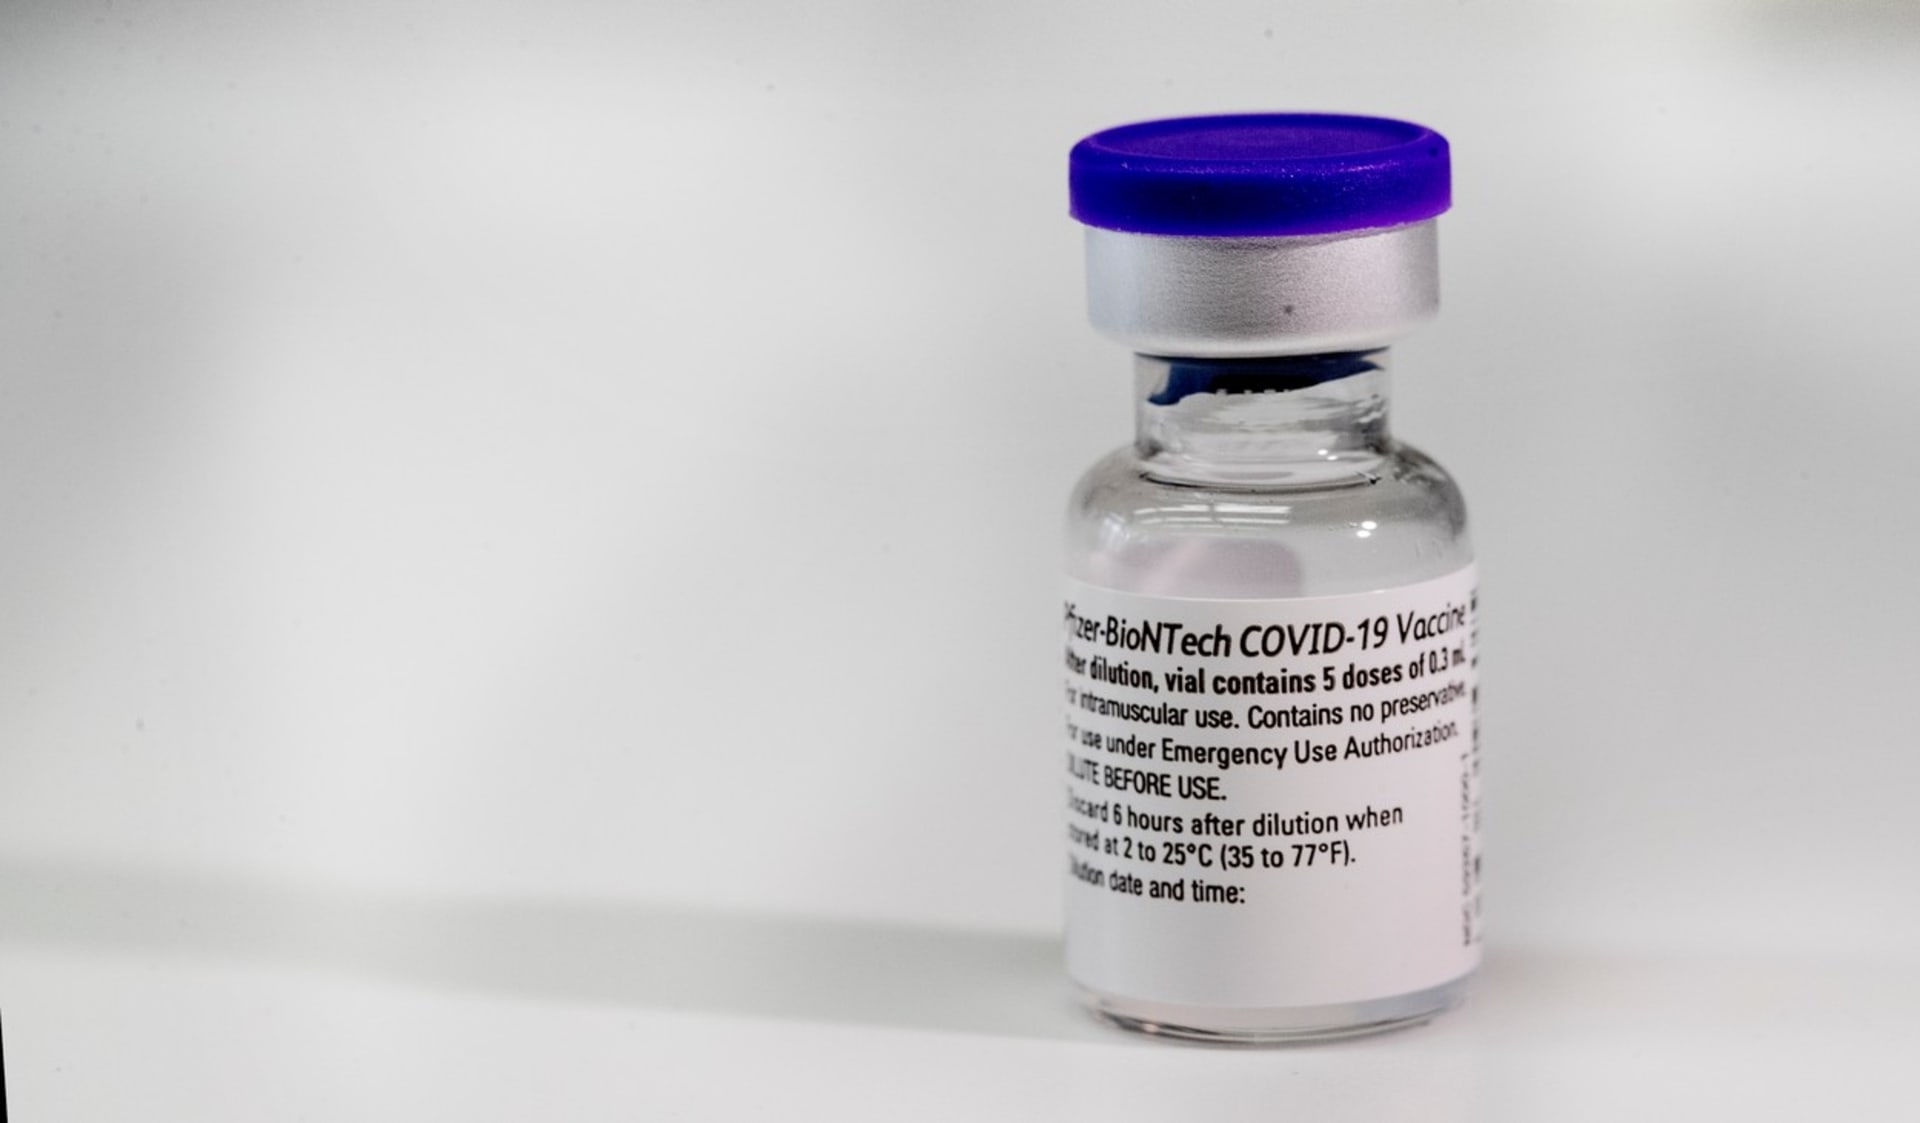 Nová vakcína má být účinná proti brazilské mutaci koronaviru. Podobně jako ta od společnosti Pfizer/BioNTech. 